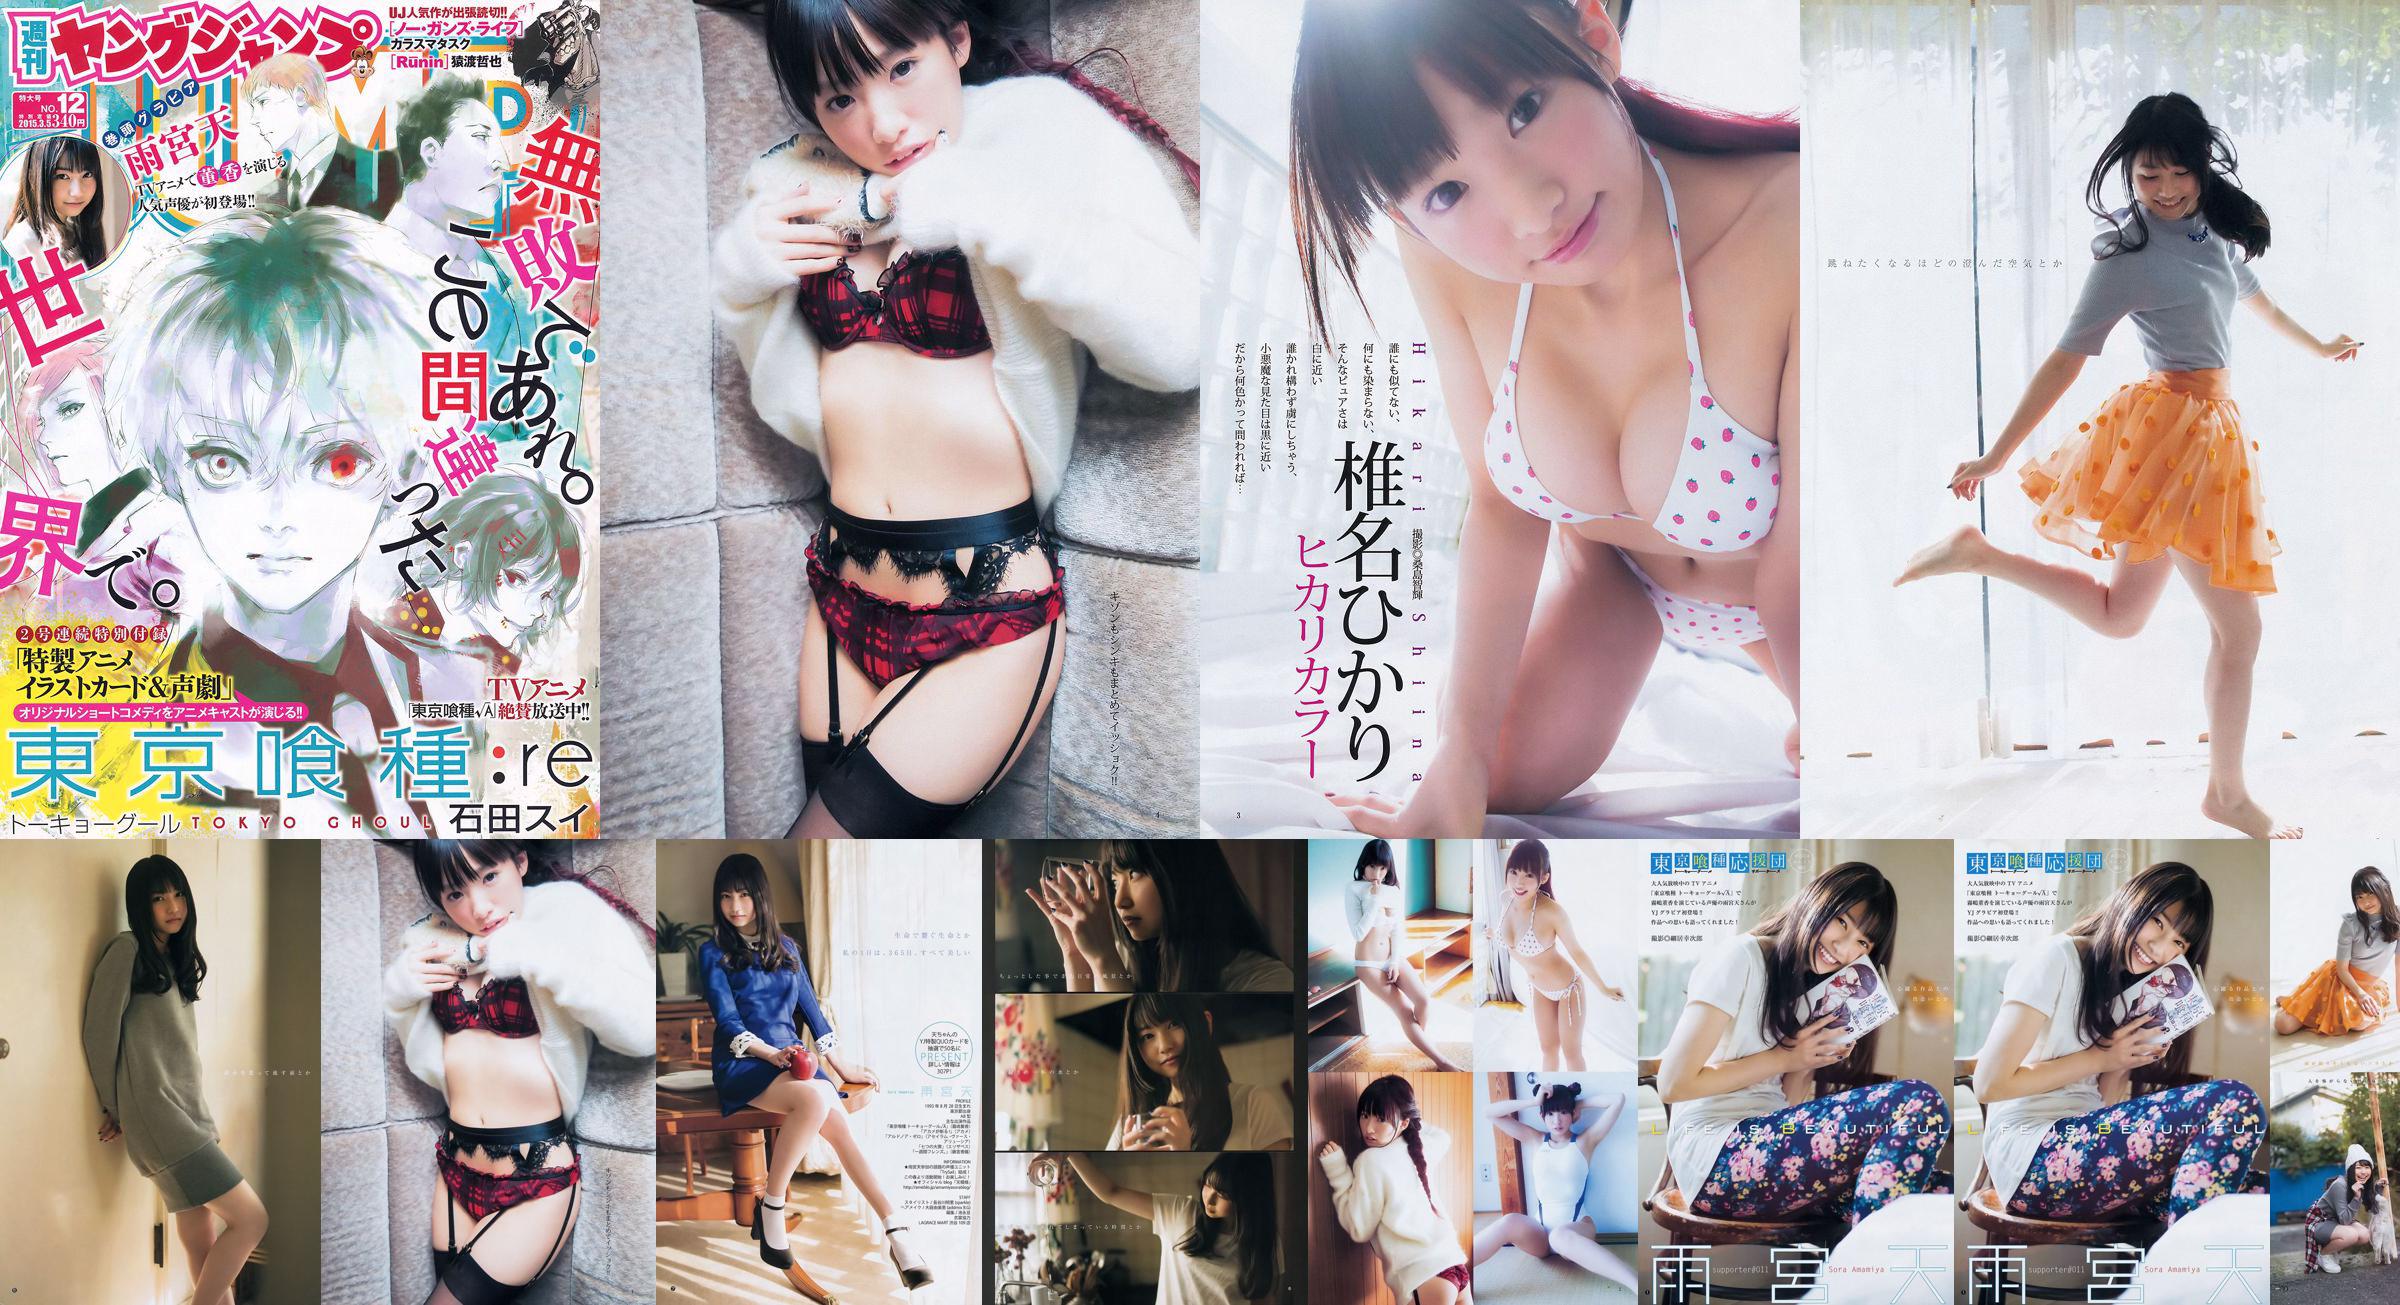 Amamiya Tian Shiina ひかり [Weekly Young Jump] 2015 No.12 Photo Magazine No.f6553b Página 1